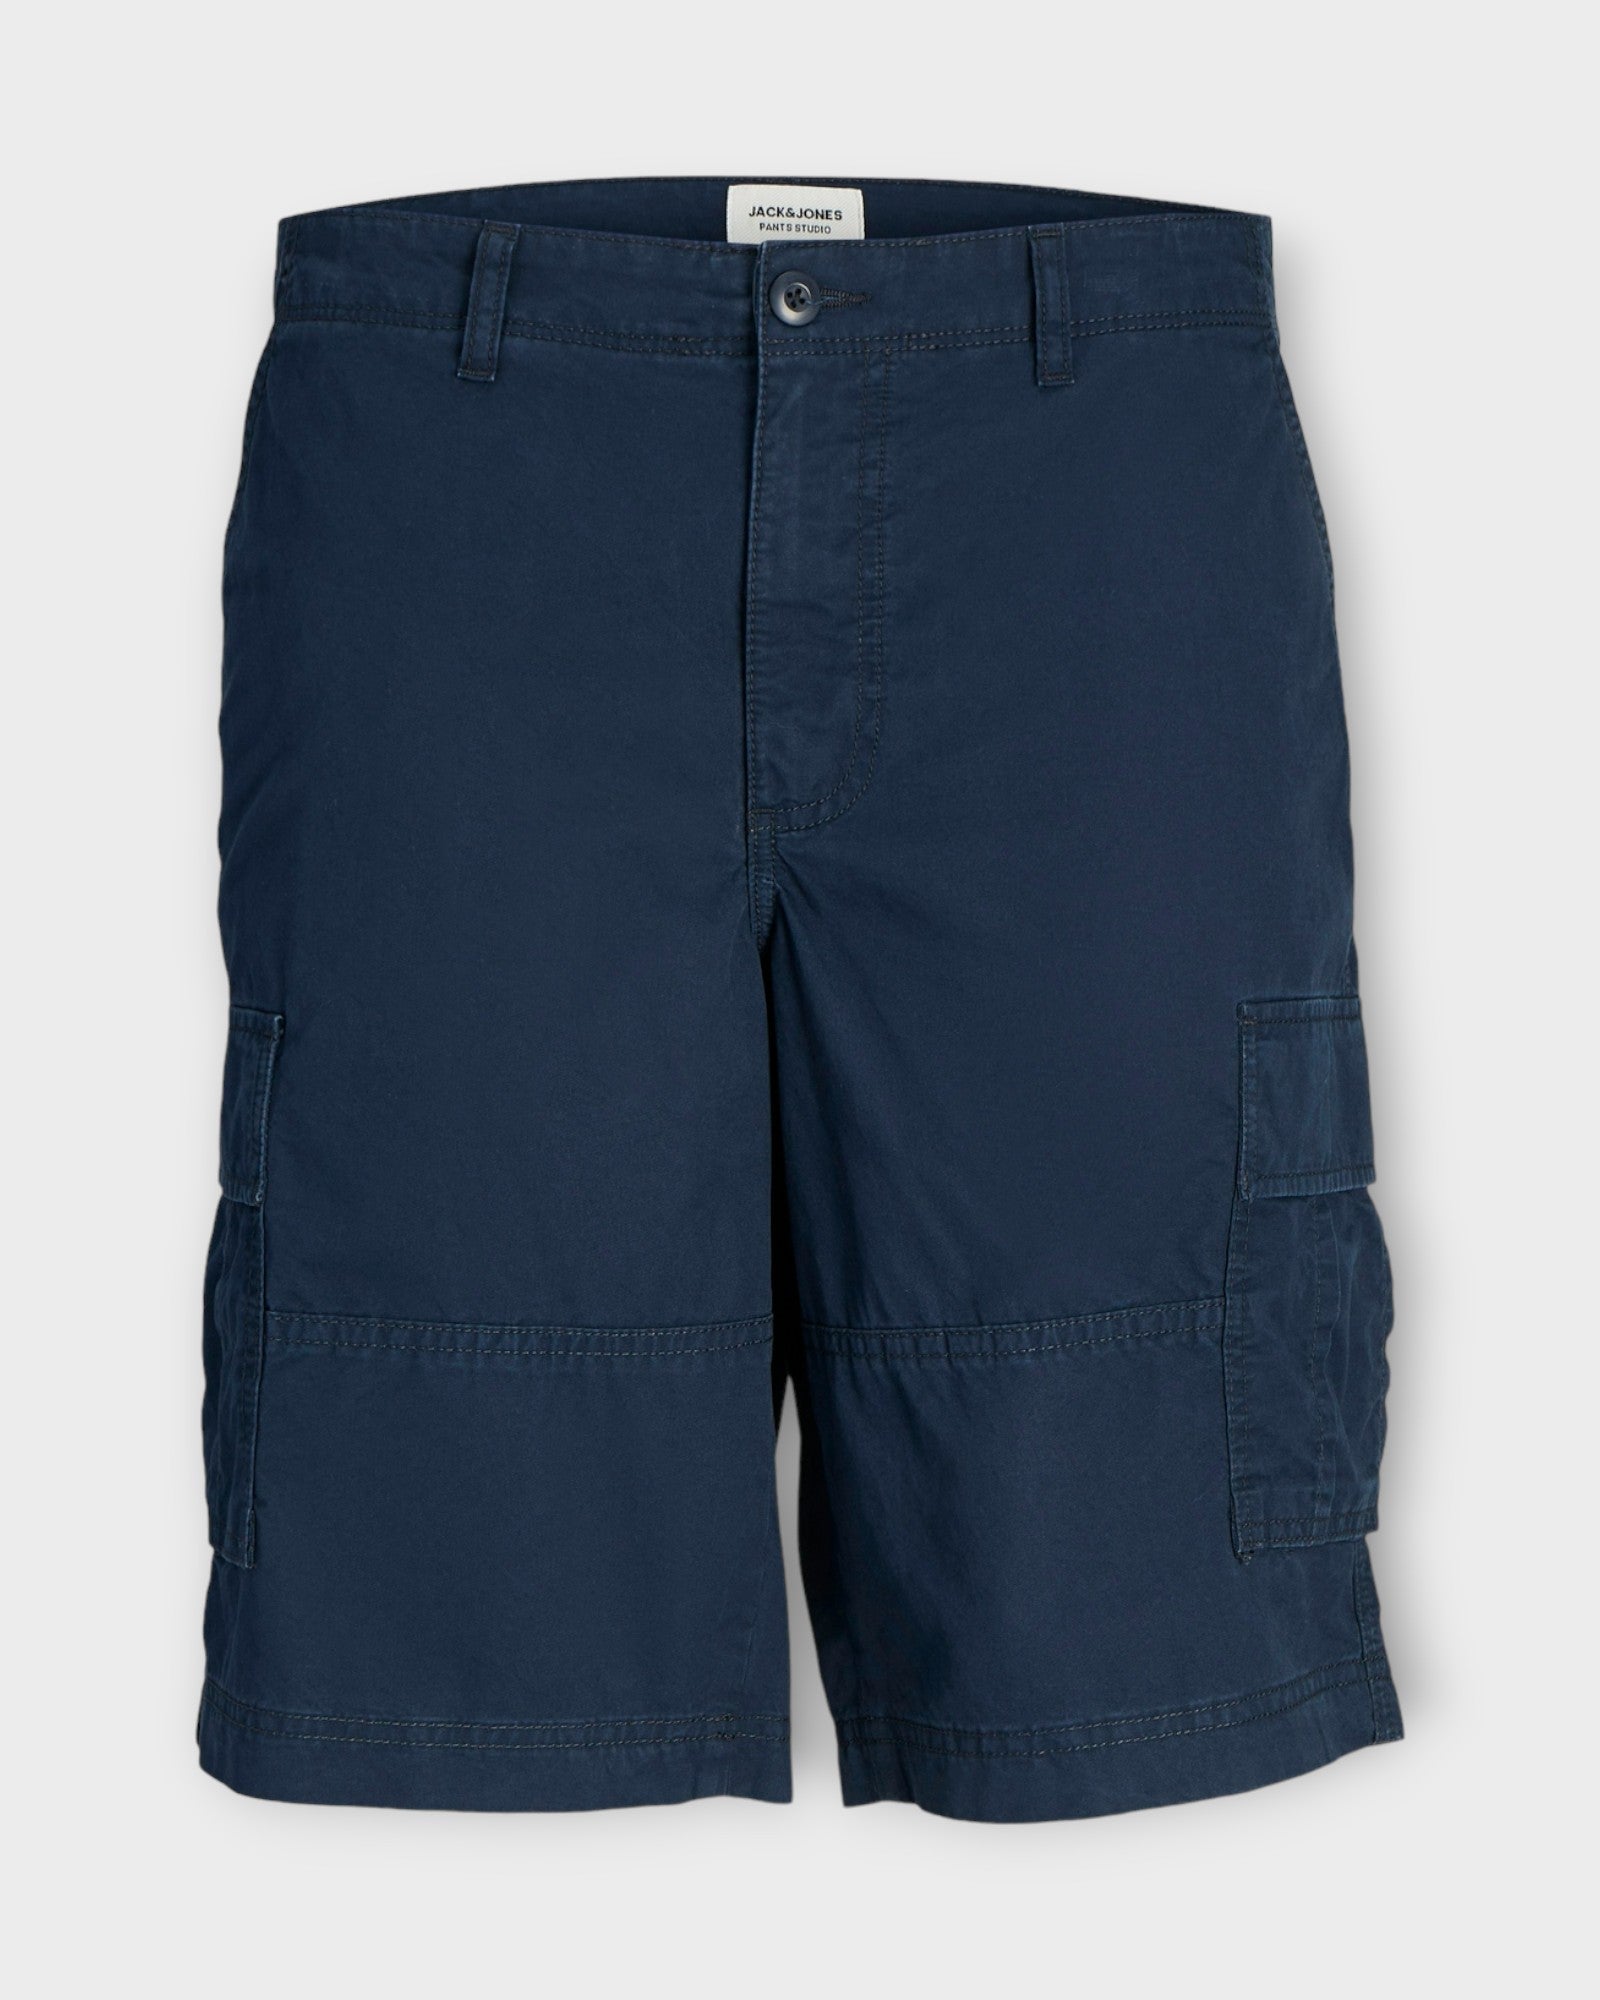 Cole Short Navy Blazer fra Jack and Jones. Mørkeblå Cargo shorts til mænd. Her set forfra.